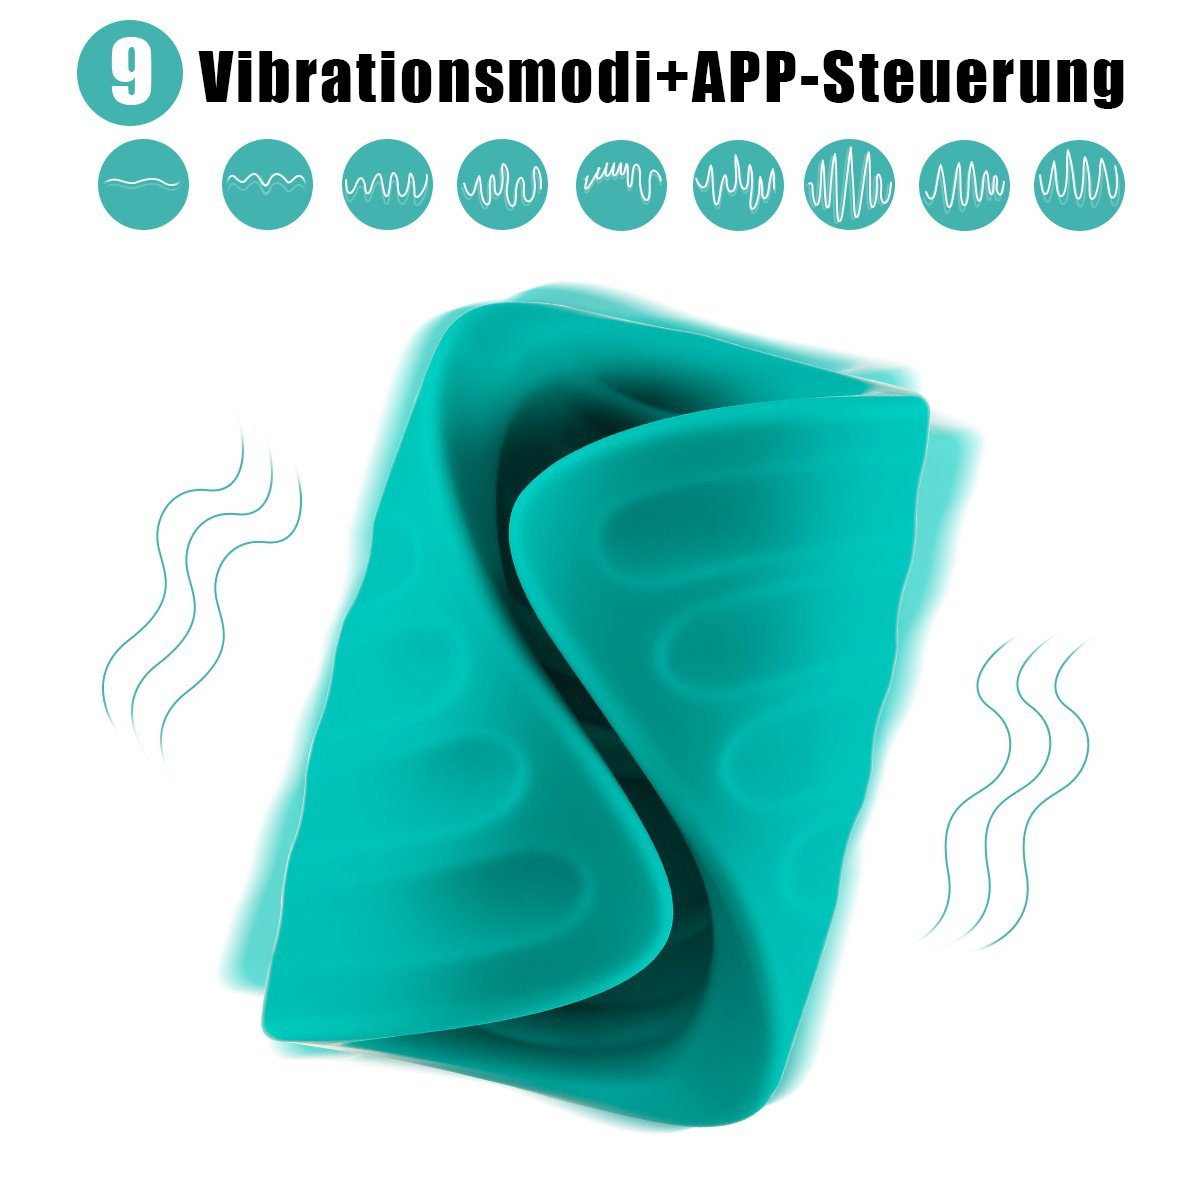 LOVONLIVE Massagegerät Elektrischer Masturbator 2in1 App Stimulator mit Penistrainer Sexspielzeug Eichel Vibrator Steuerung, Vibrationsmodi 9 Masturbatoren mit